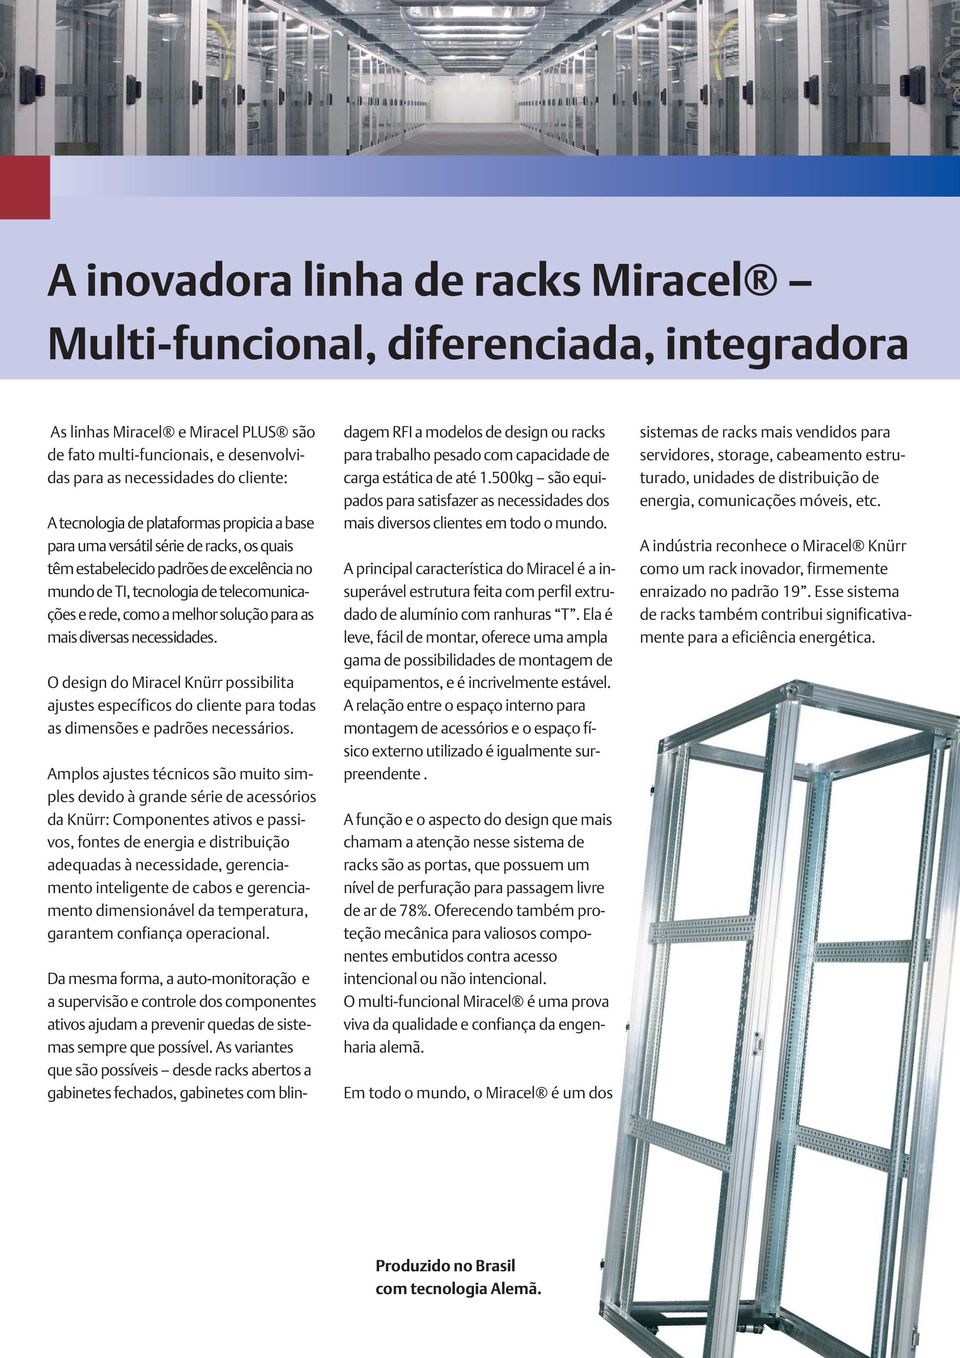 solução para as mais diversas necessidades. O design do Miracel Knürr possibilita ajustes específicos do cliente para todas as dimensões e padrões necessários.